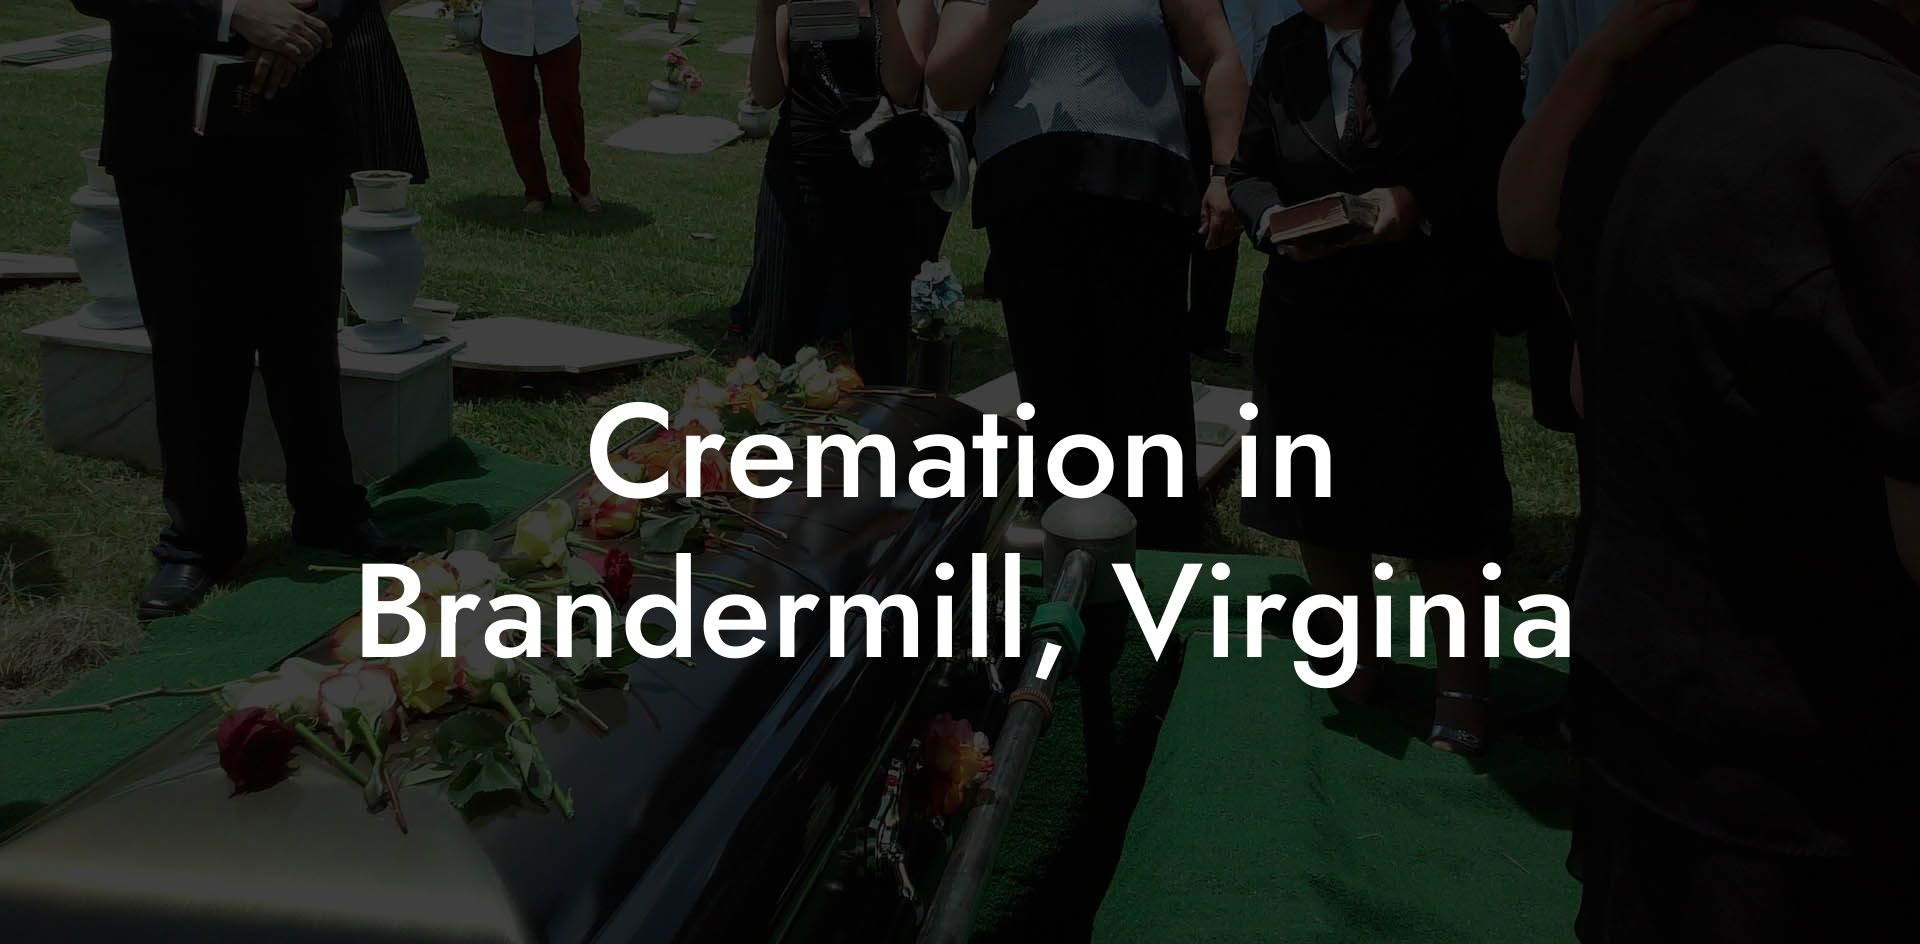 Cremation in Brandermill, Virginia